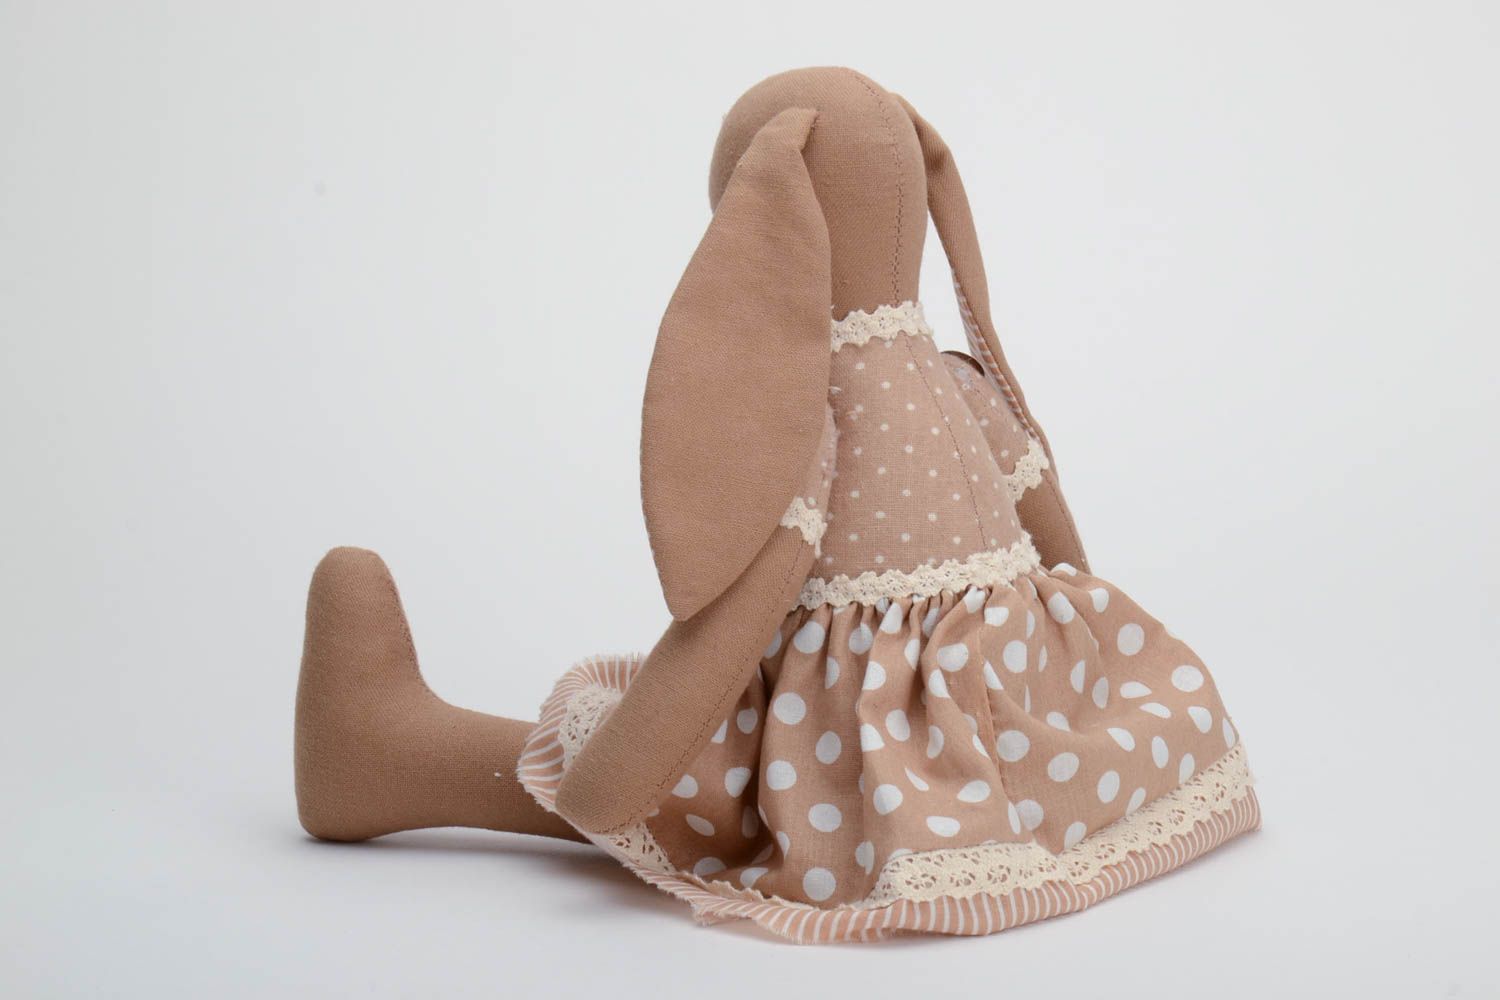 Мягкая кукла ручной работы из хлопка для декора дома или в подарок ребенку Зайка фото 4